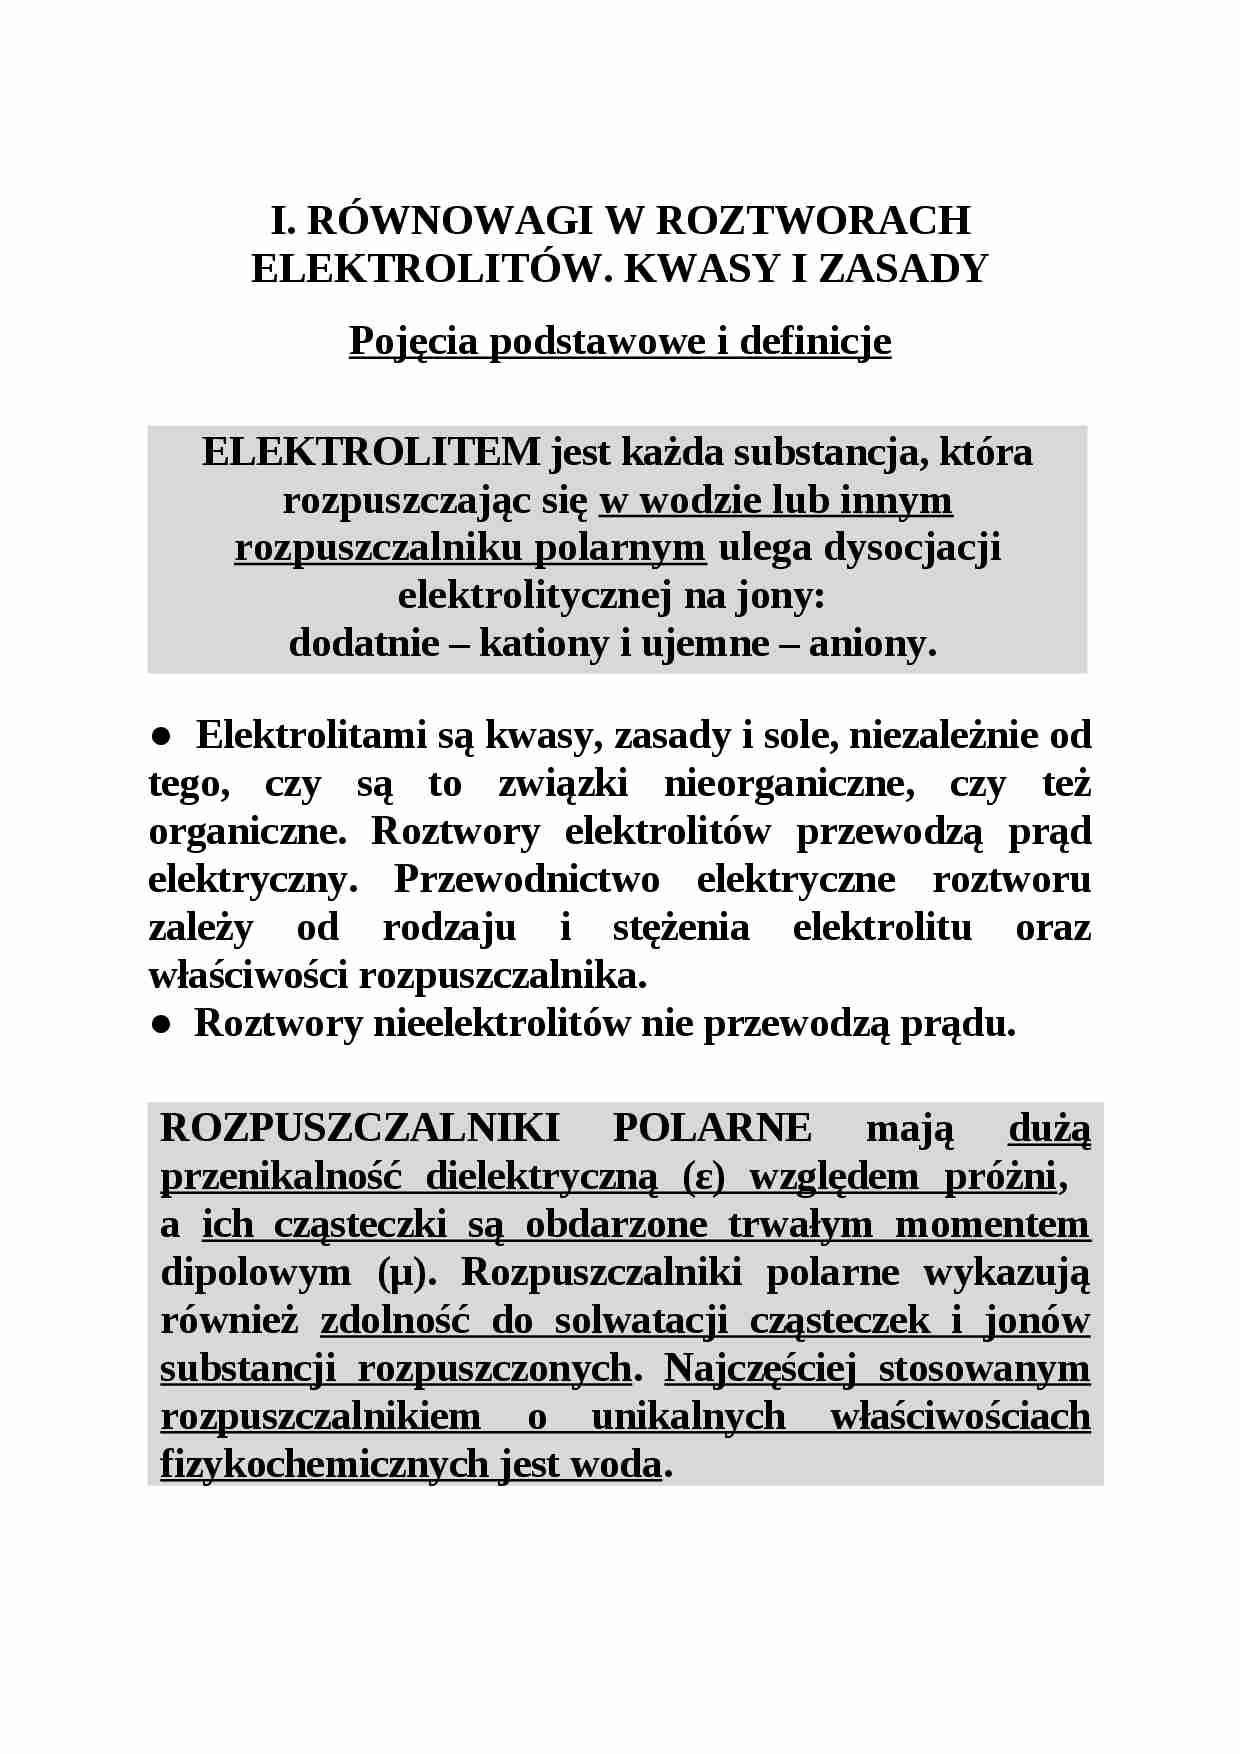 Równowagi w roztworach elektrolitów - Rozpuszczalniki polarne - strona 1